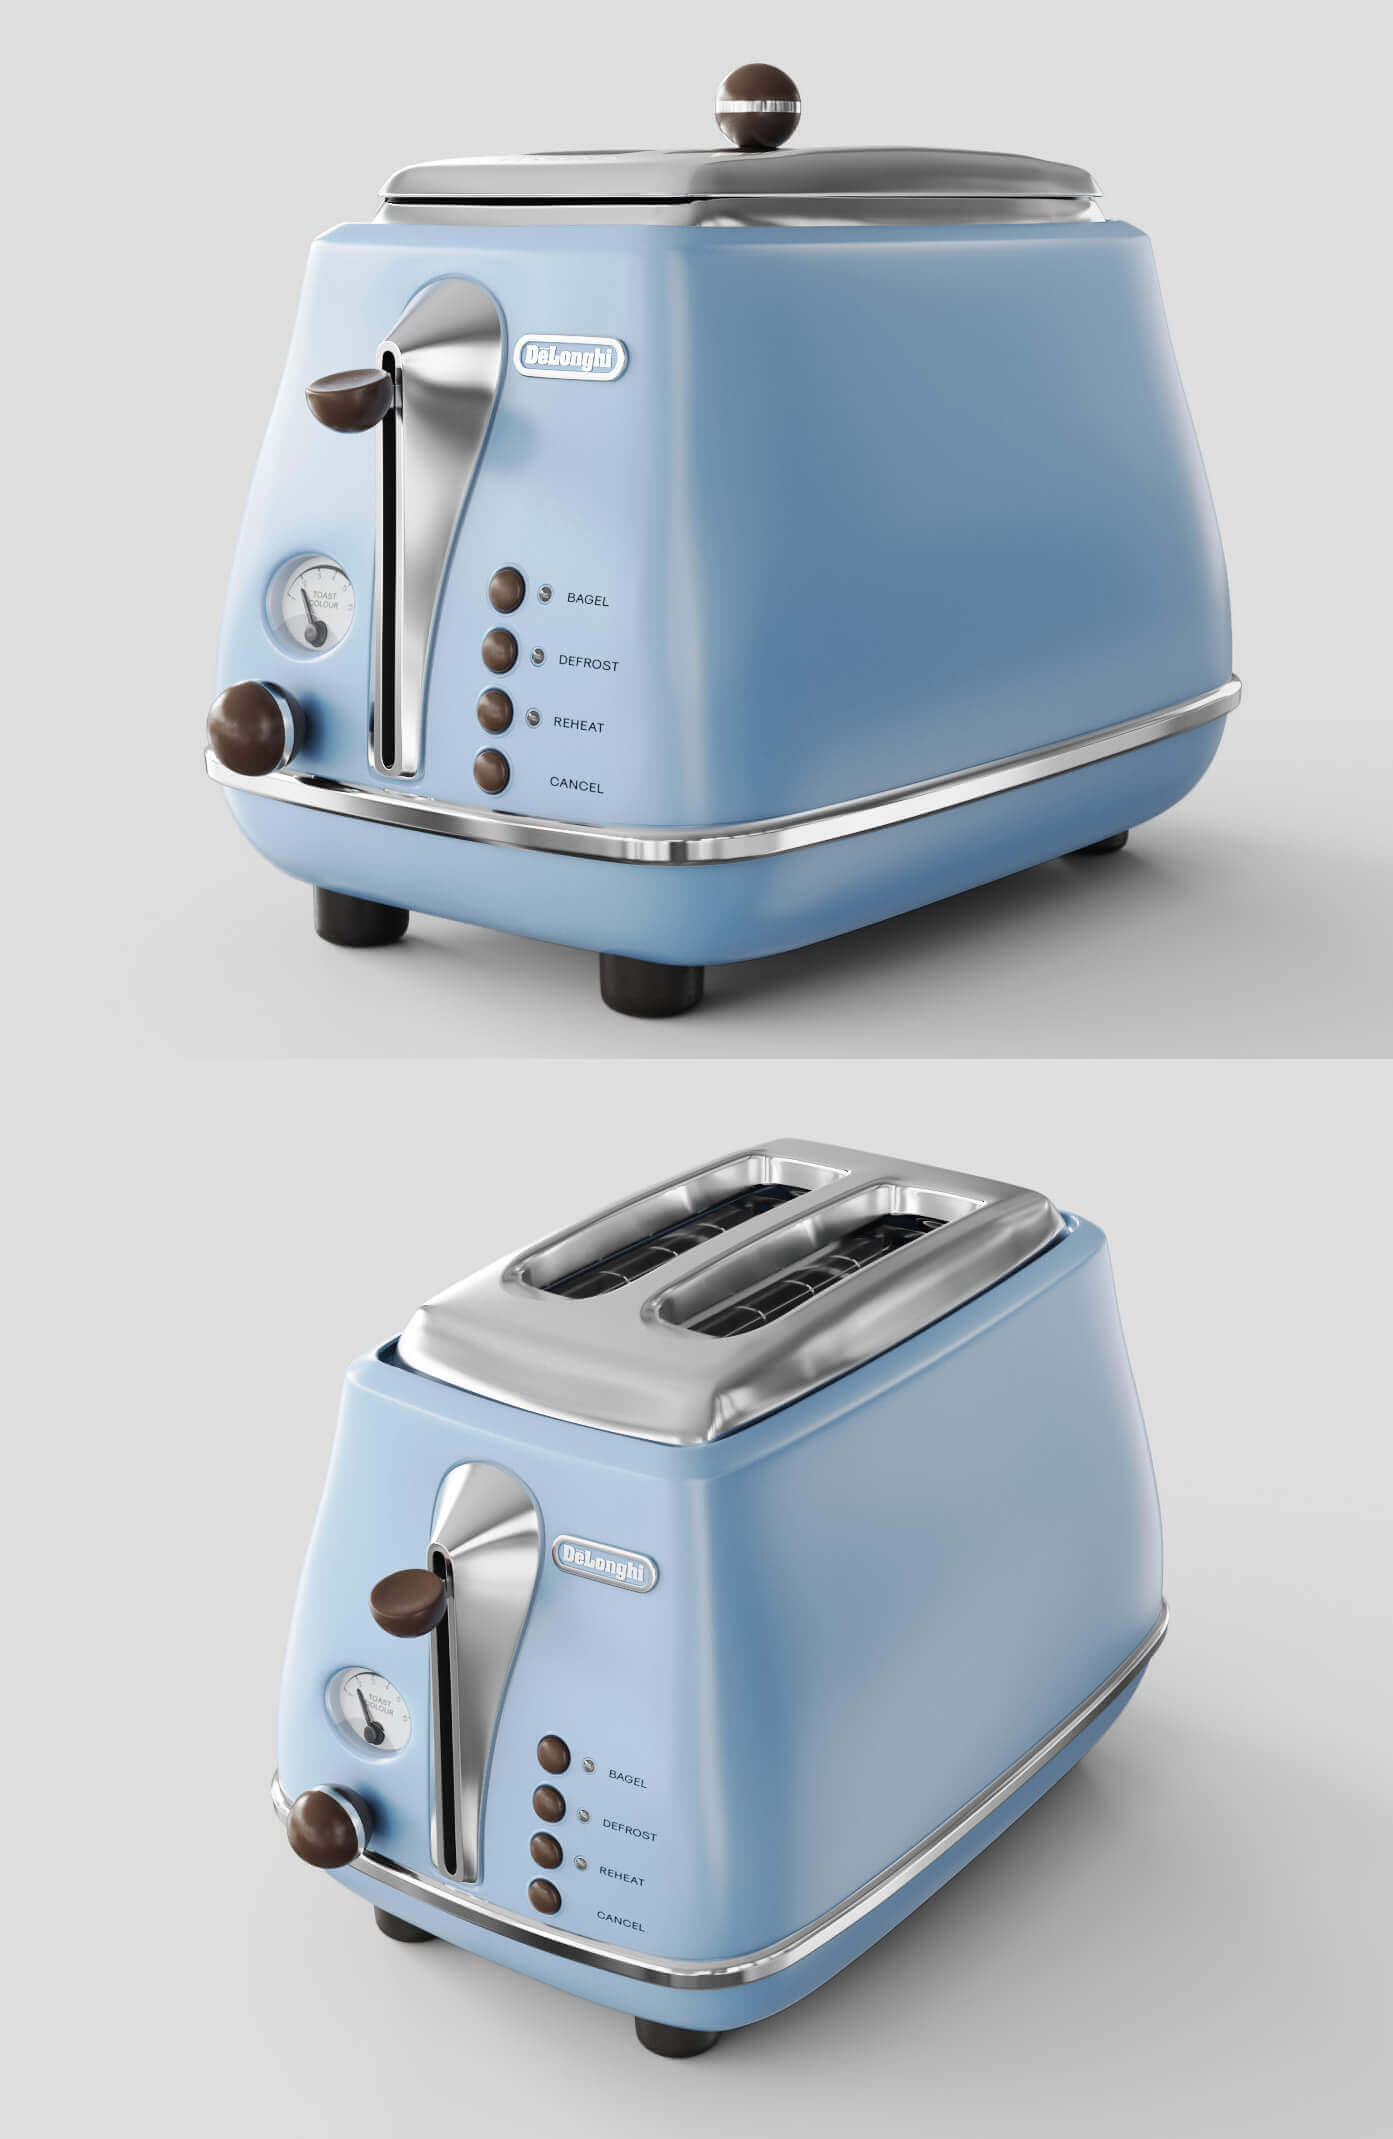 Delonghi德龙老式烤面包机3D模型（OBJ,FBX,MAX）插图